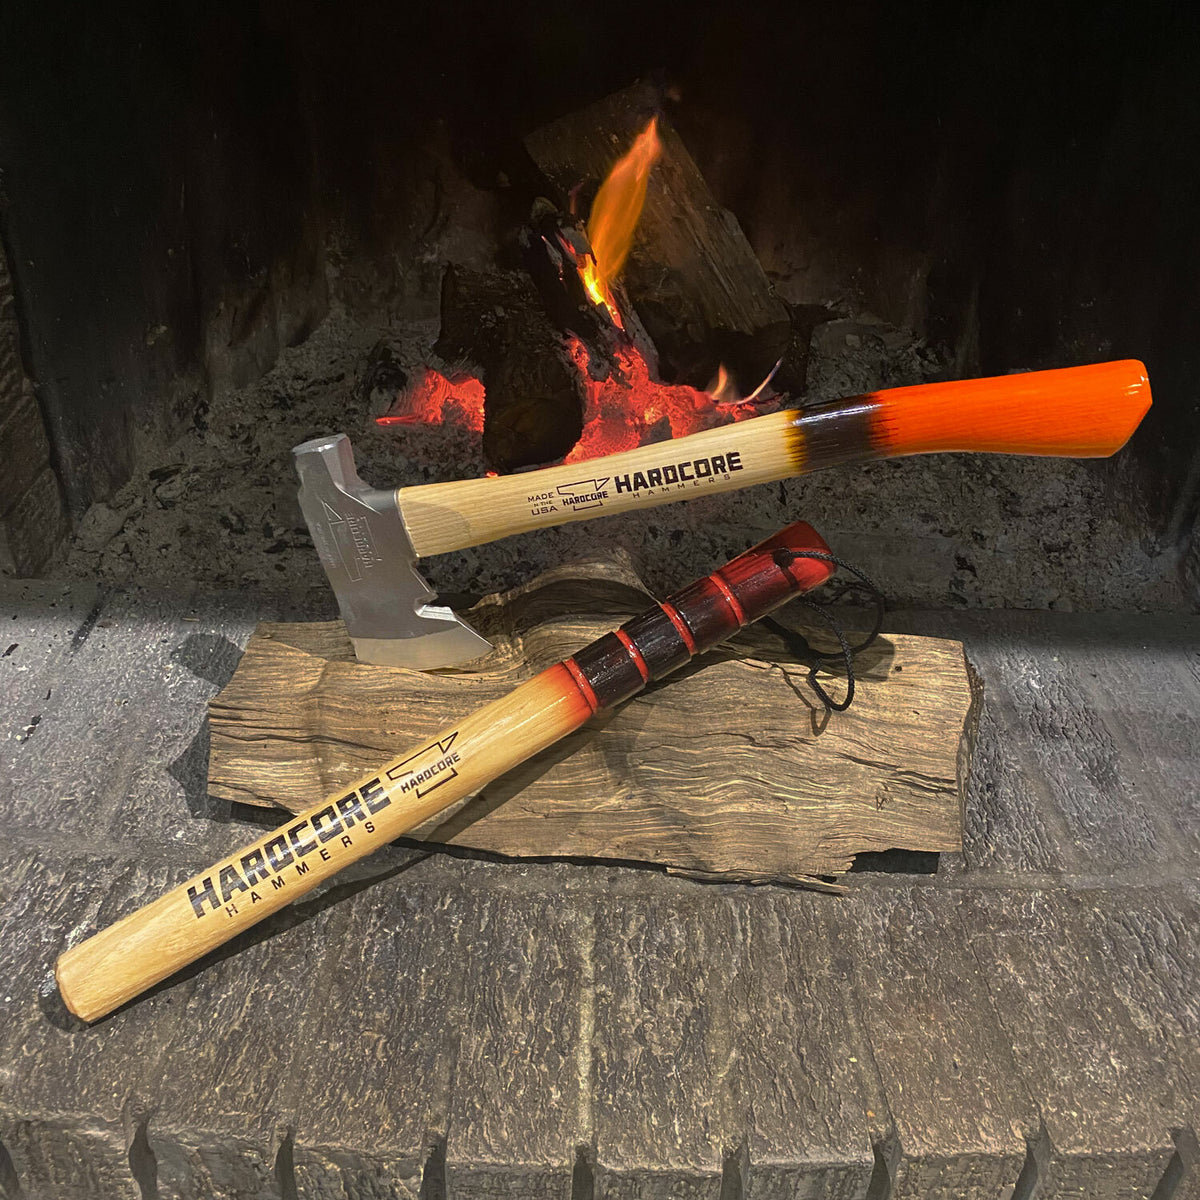 Survivalist Hatchet - Burnt Orange - Axeman.ca